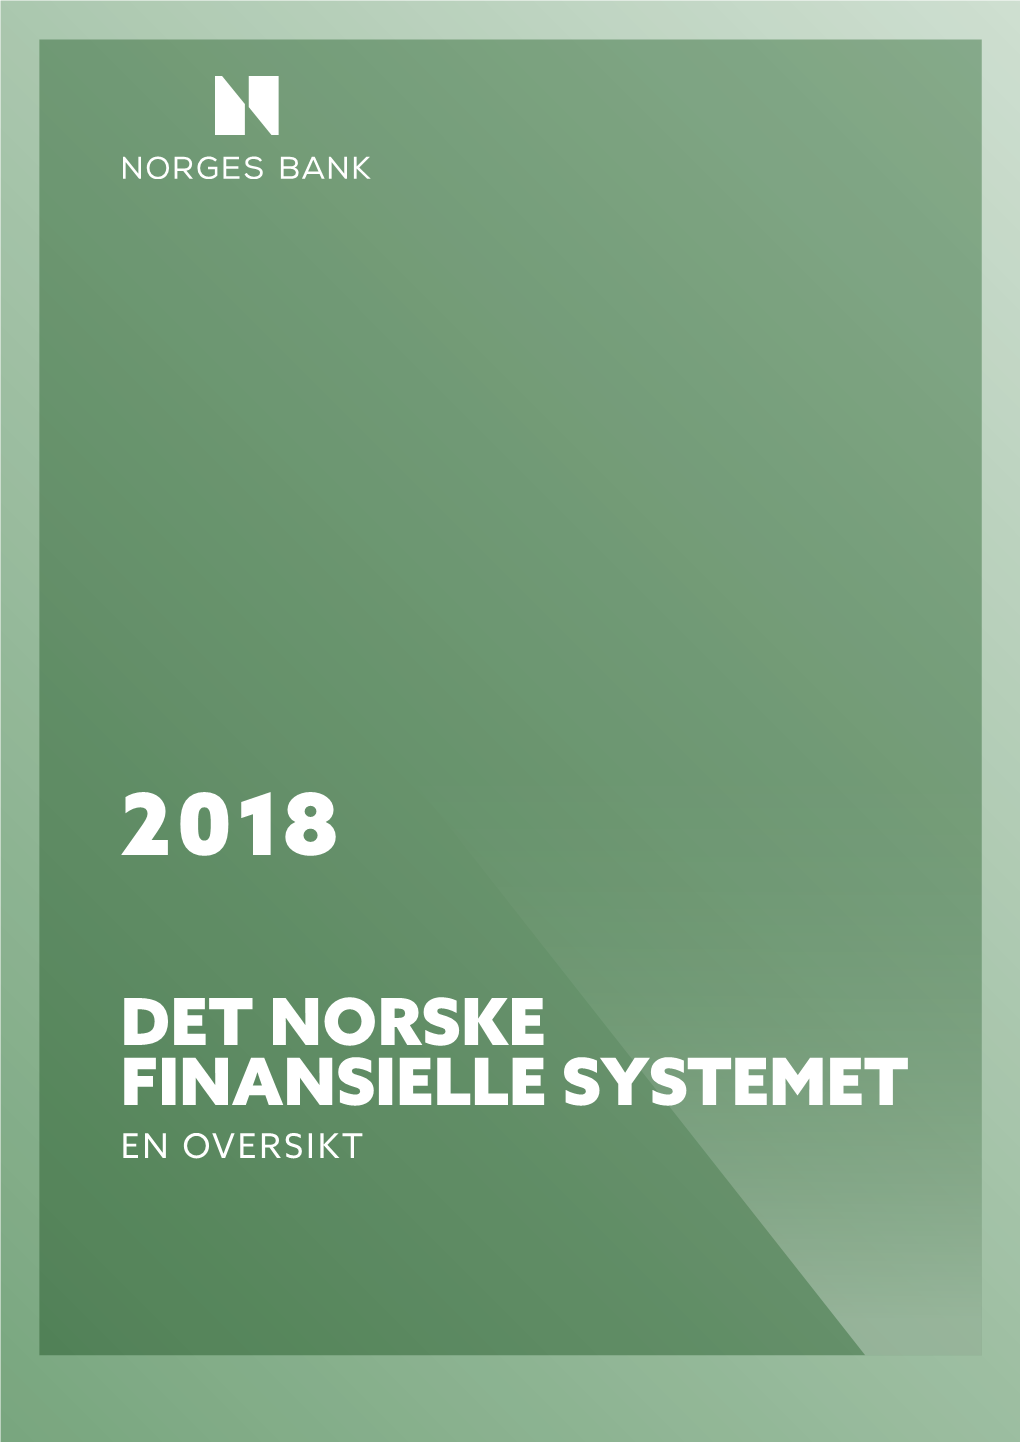 DET NORSKE FINANSIELLE SYSTEMET EN OVERSIKT Utvalgte Nøkkeltall – Det Norske Finansielle Systemet